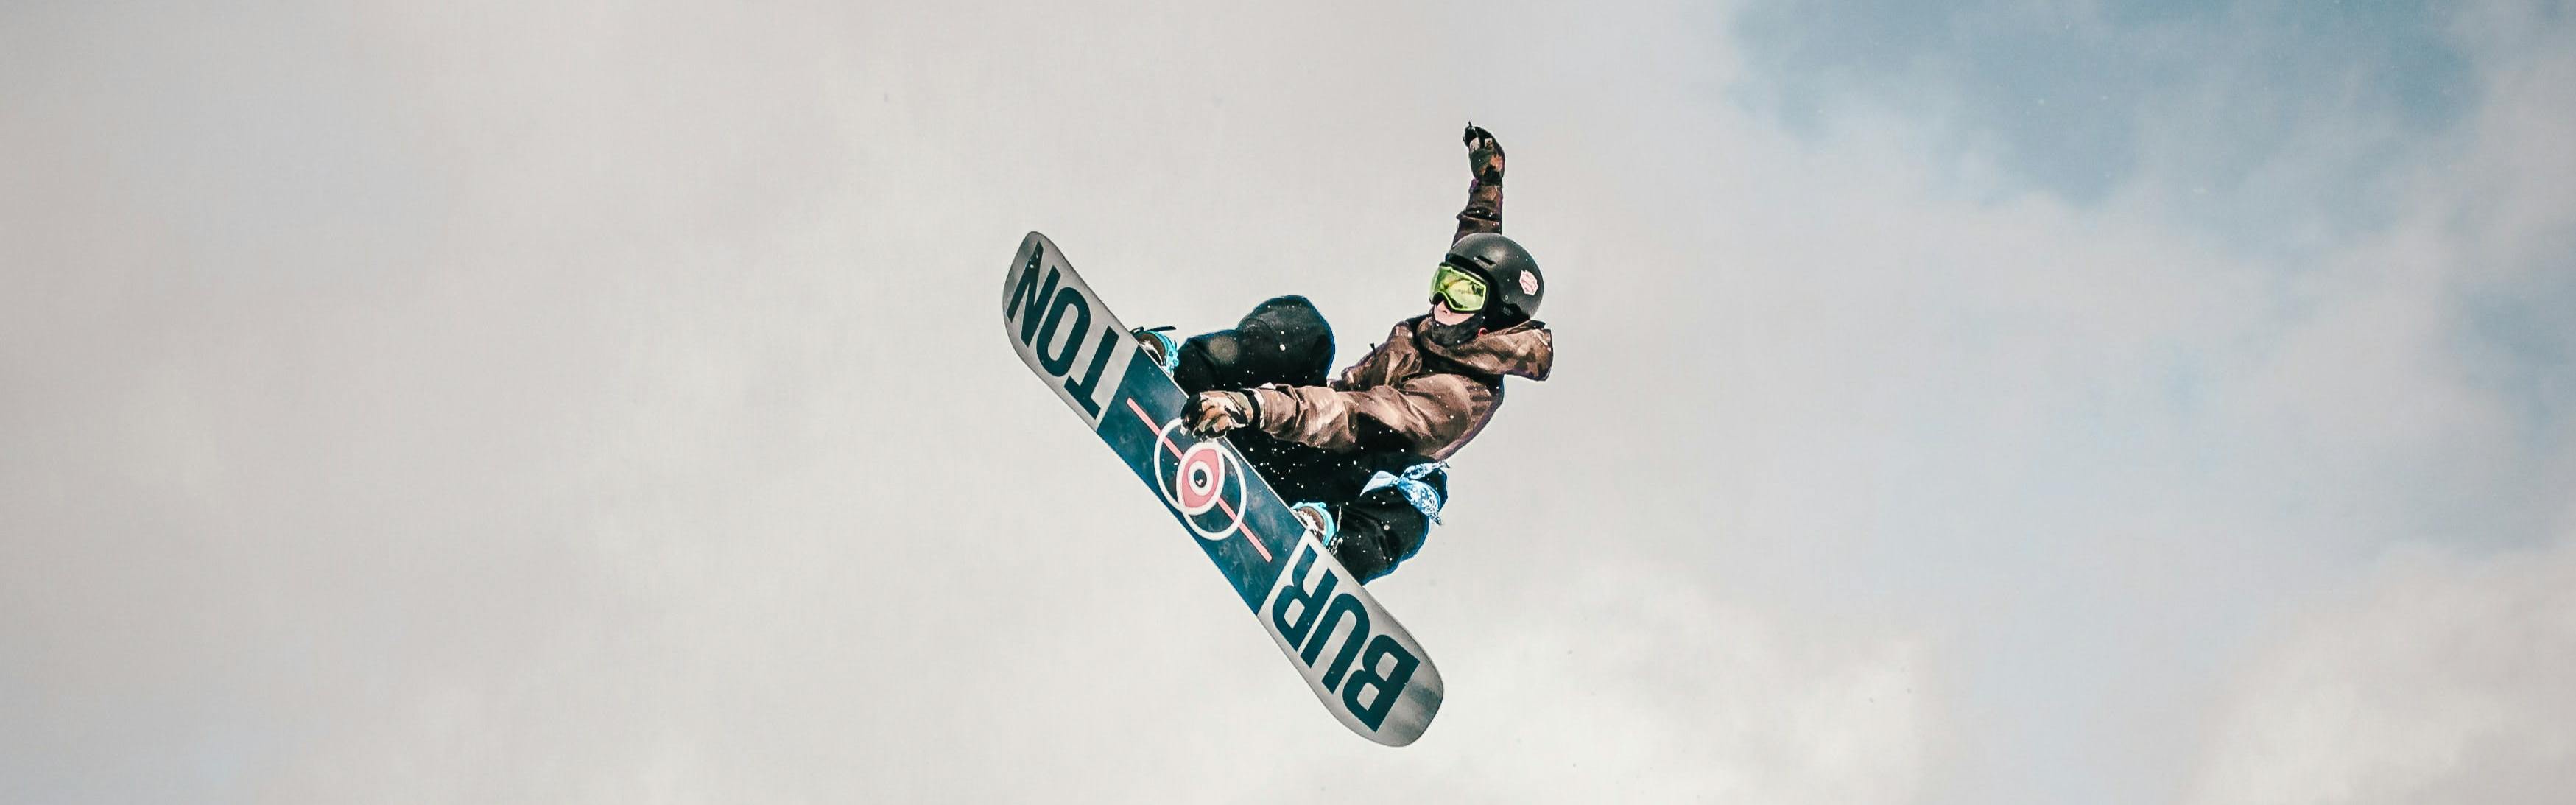 Snowboarder doing a jump on a Burton board.